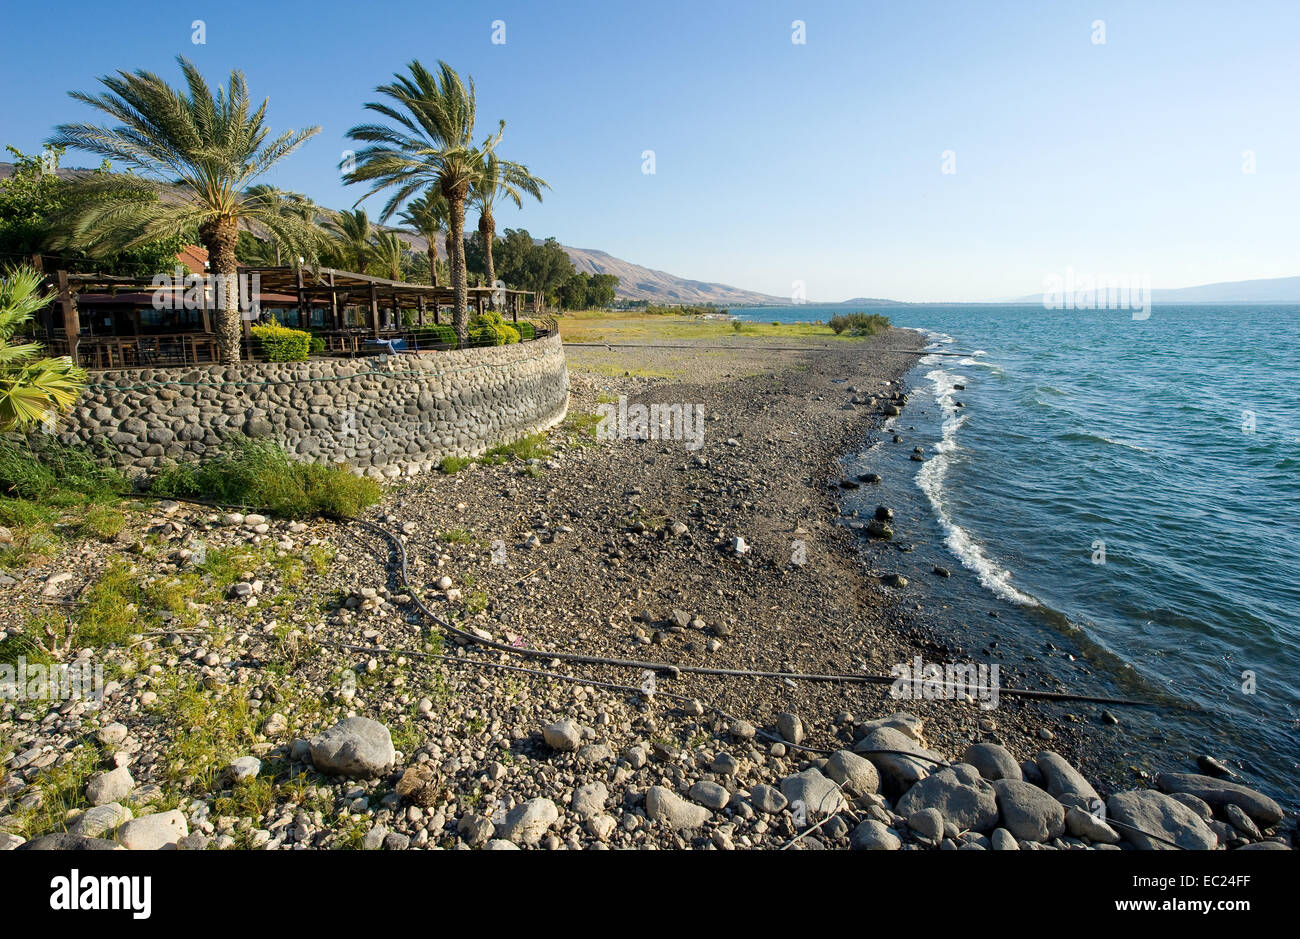 La spiaggia sulla costa orientale del Mare di Galilea in Israele Foto Stock